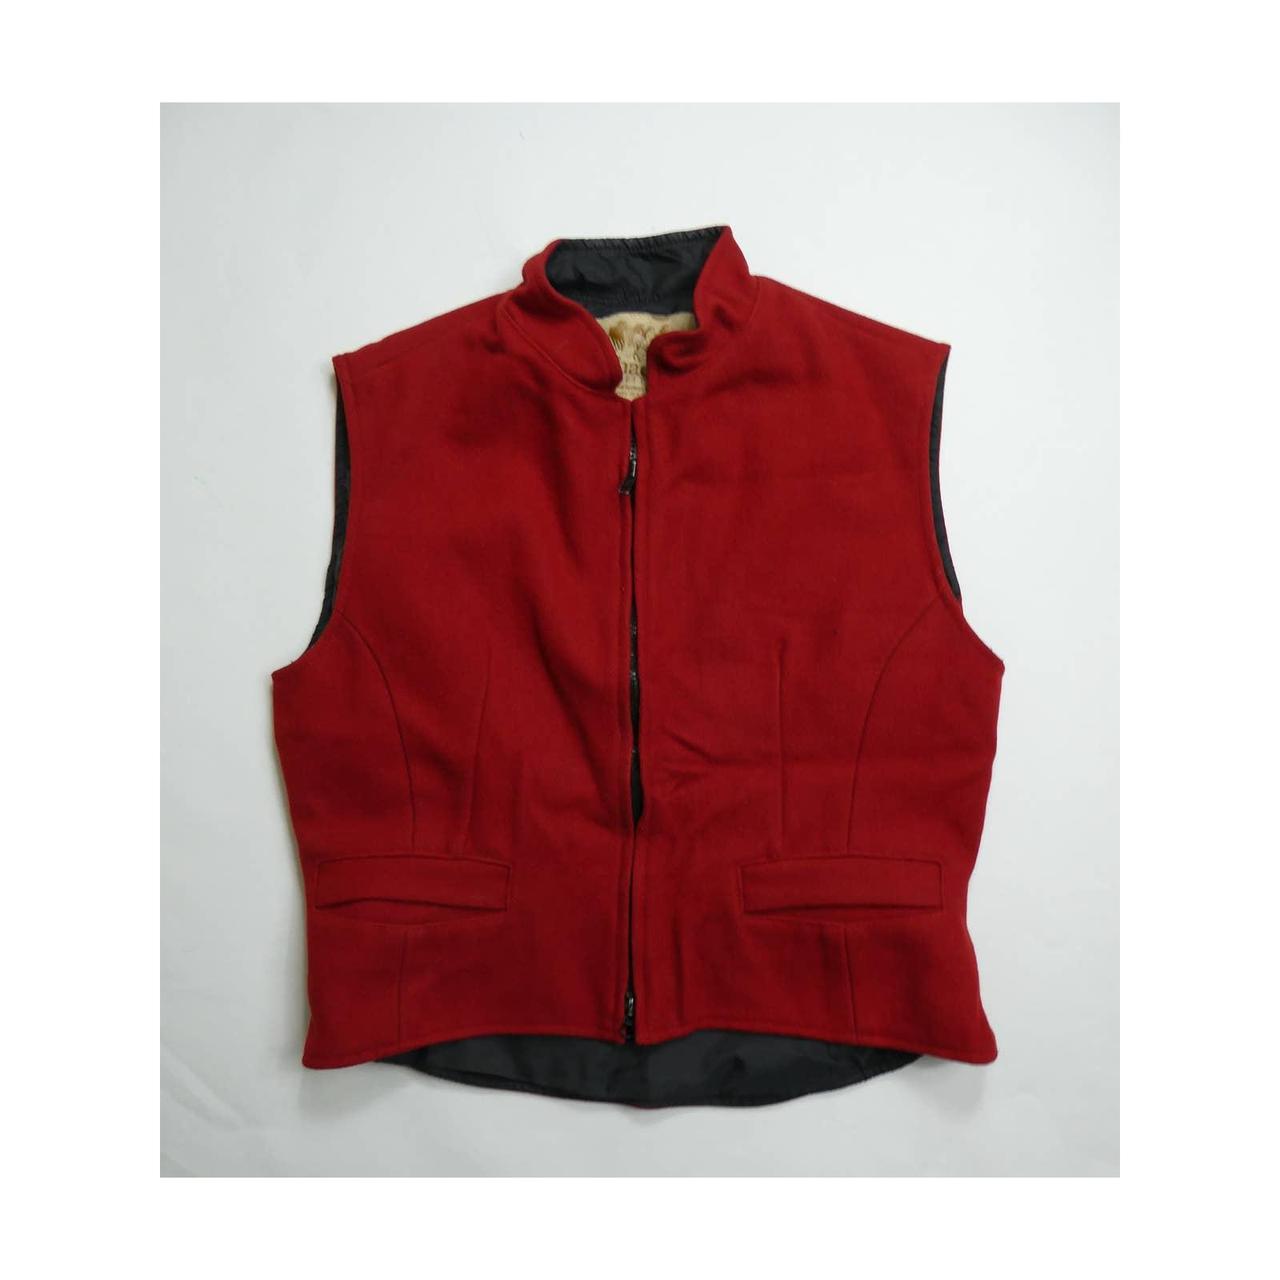 Schaefer Outfitter Vest, Full Zip Wool Blend - Depop